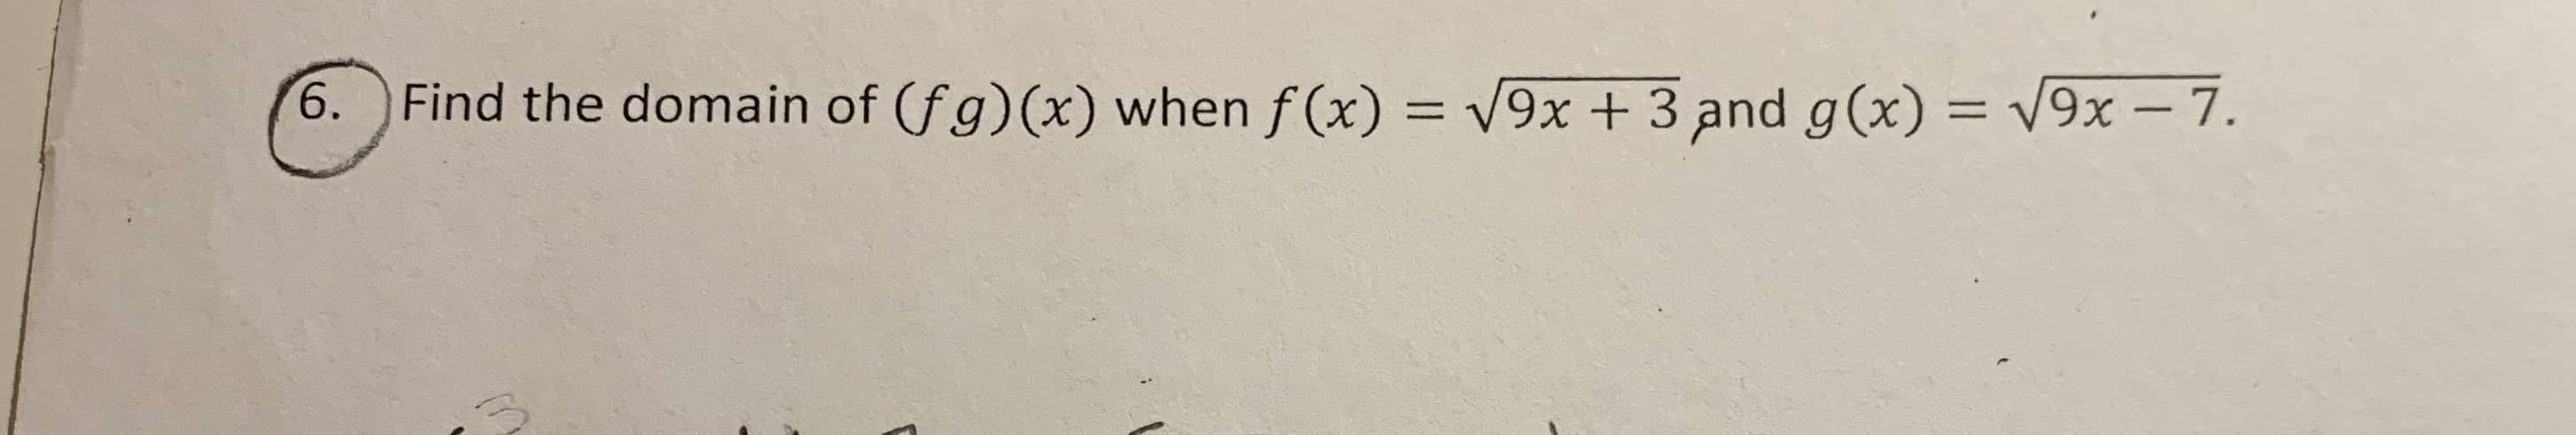 V9x +3 and g(x) = V9x- 7.
6.
Find the domain of (fg) (x) when f(x)
